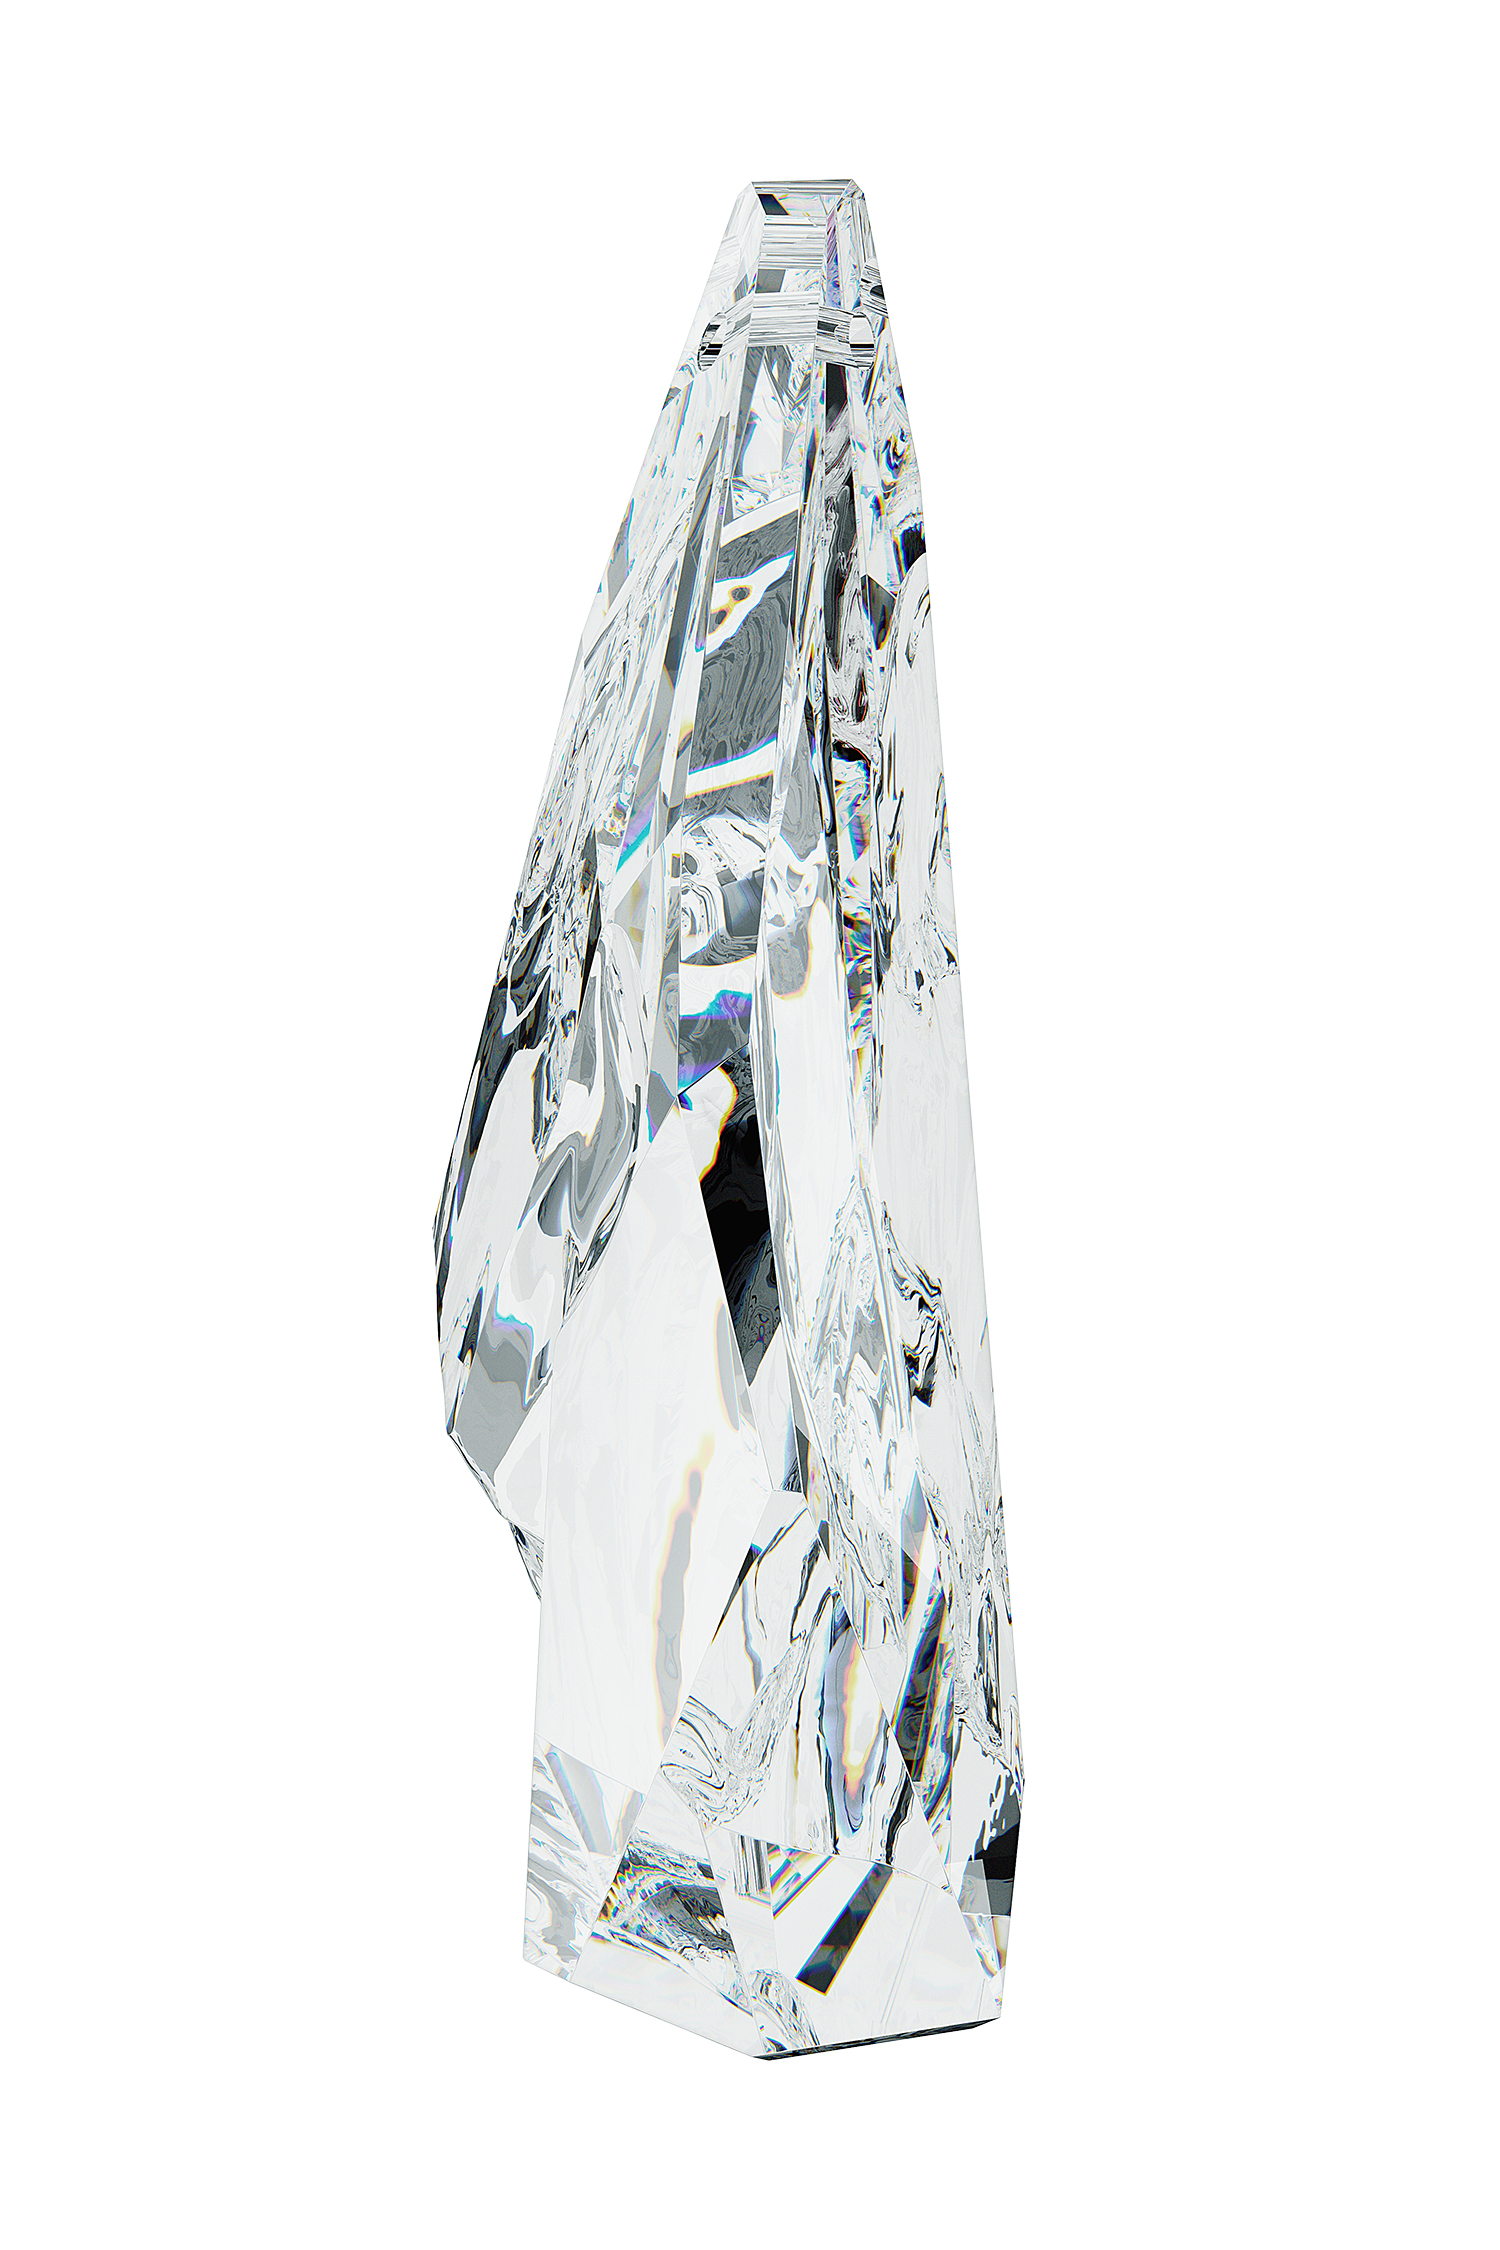 Glaciarium Crystal Shard A